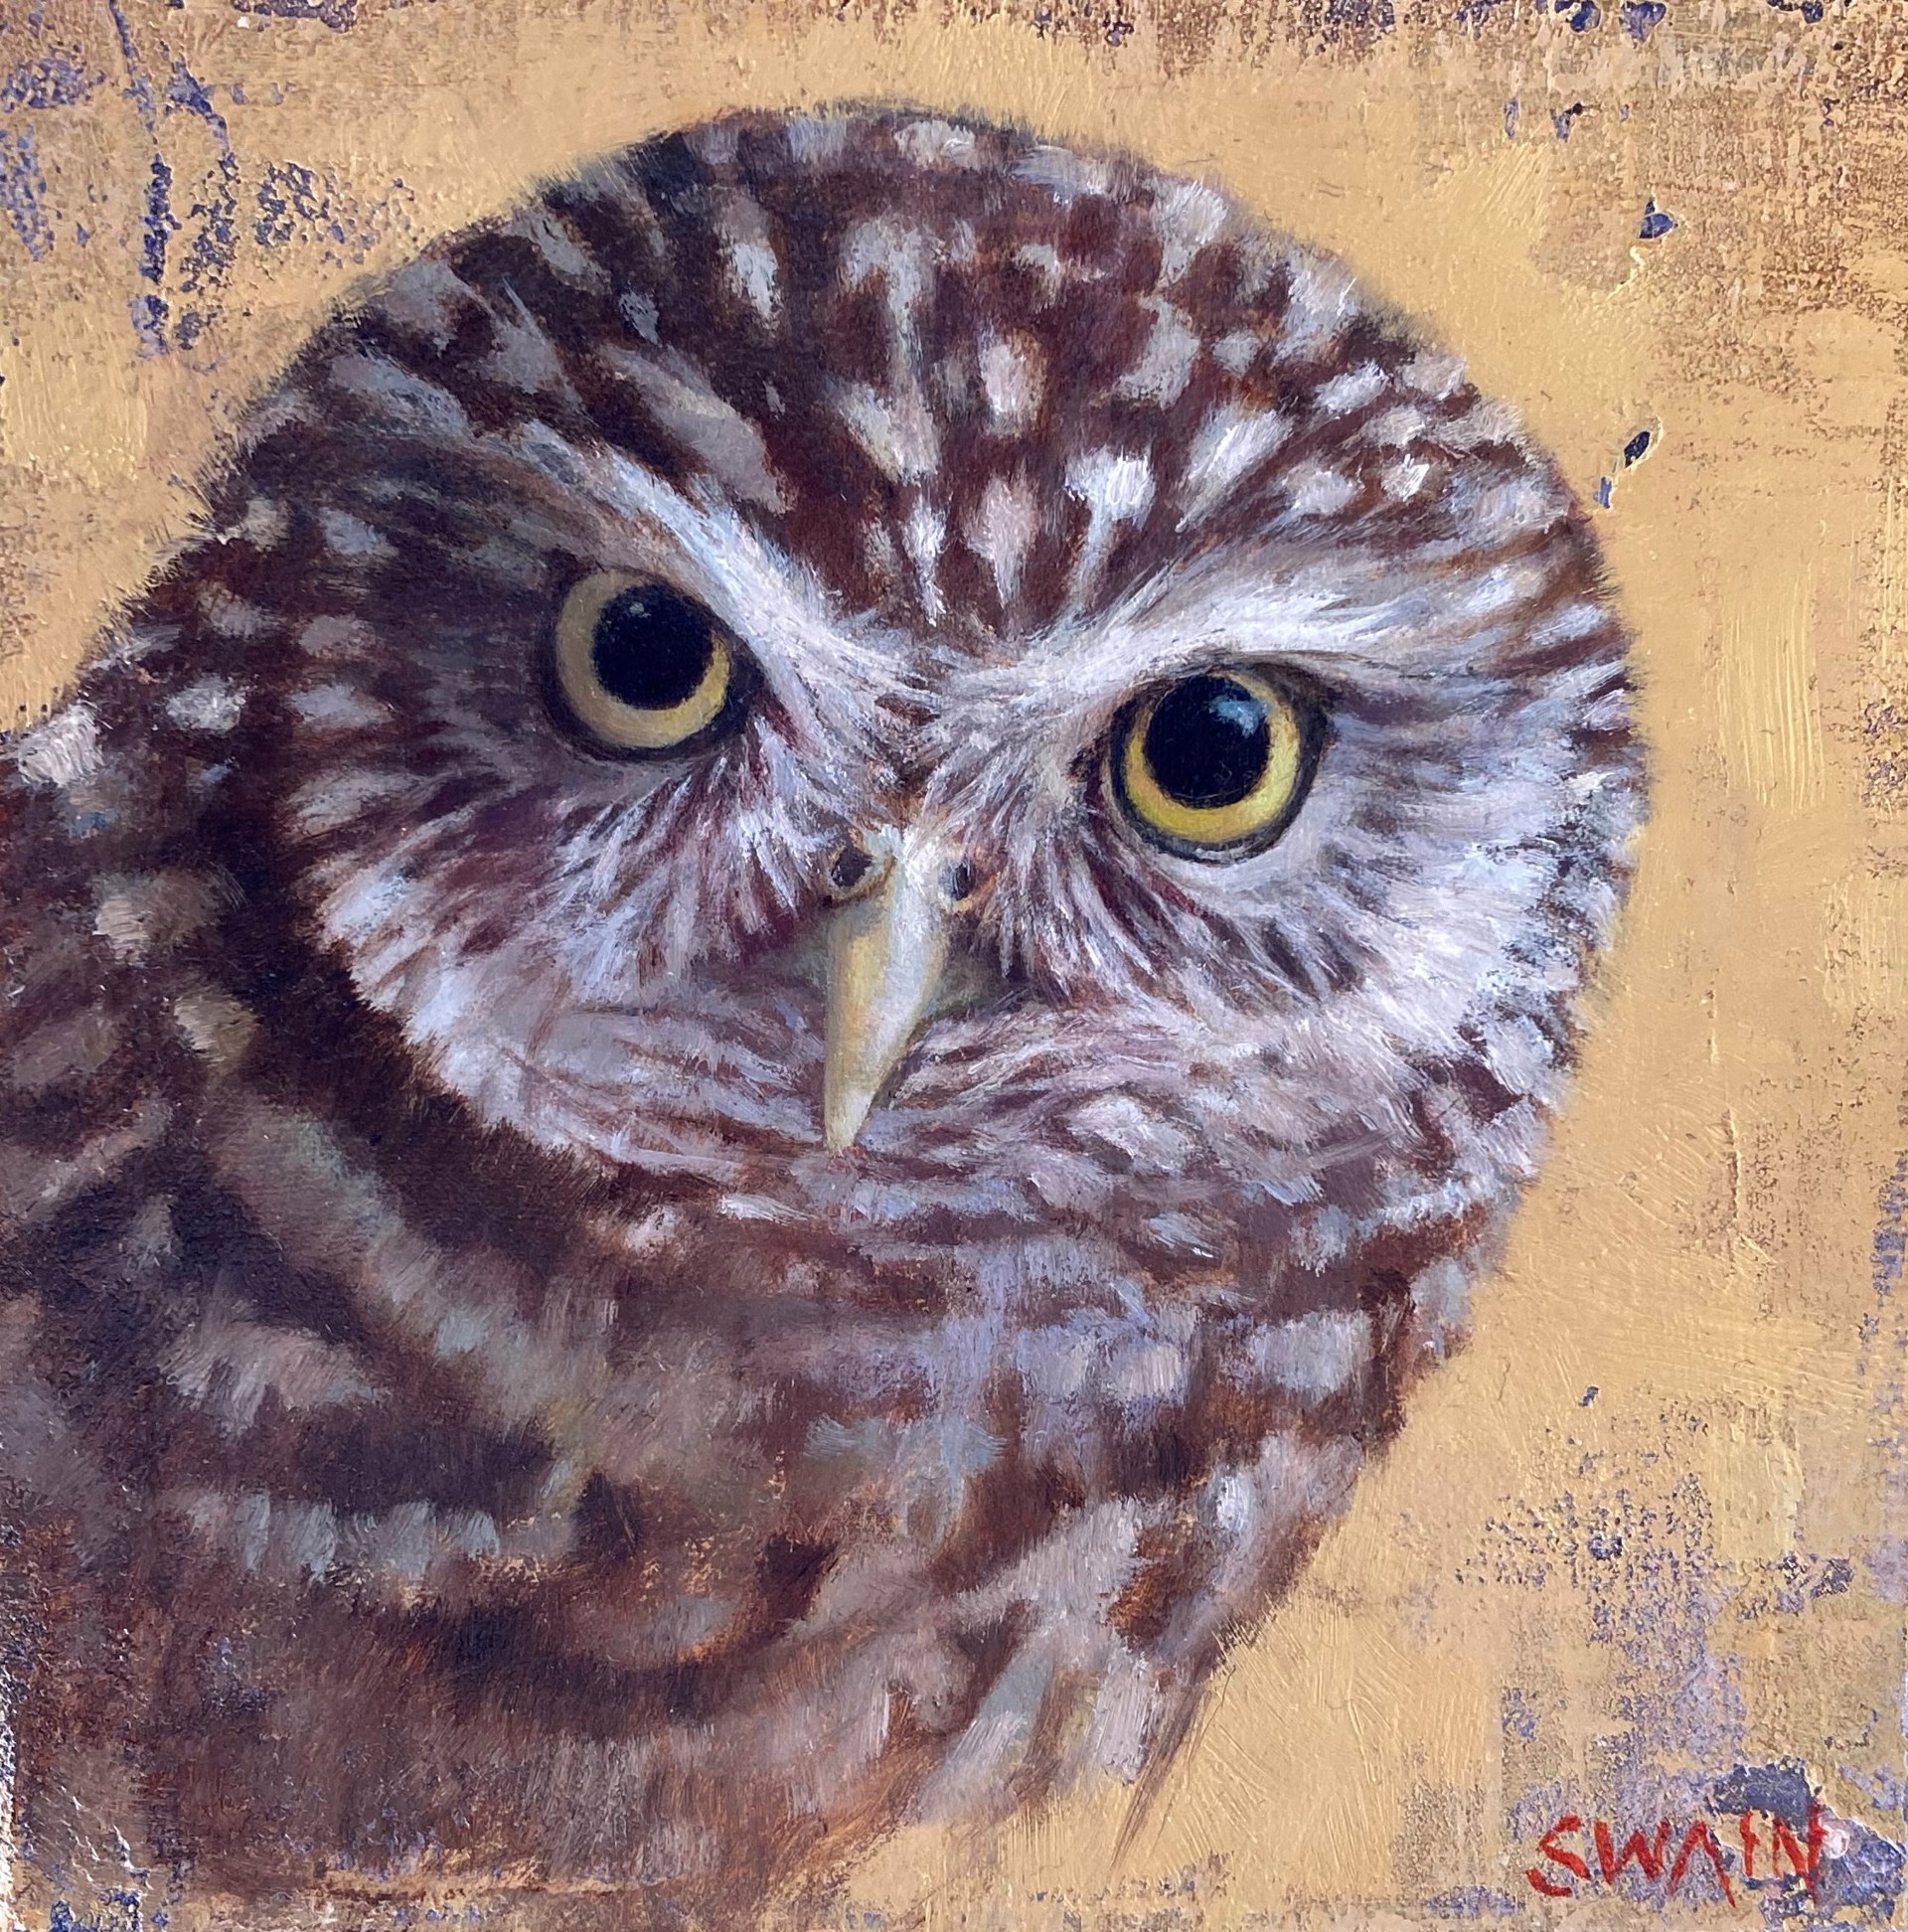 Little Owl by Tyler Swain